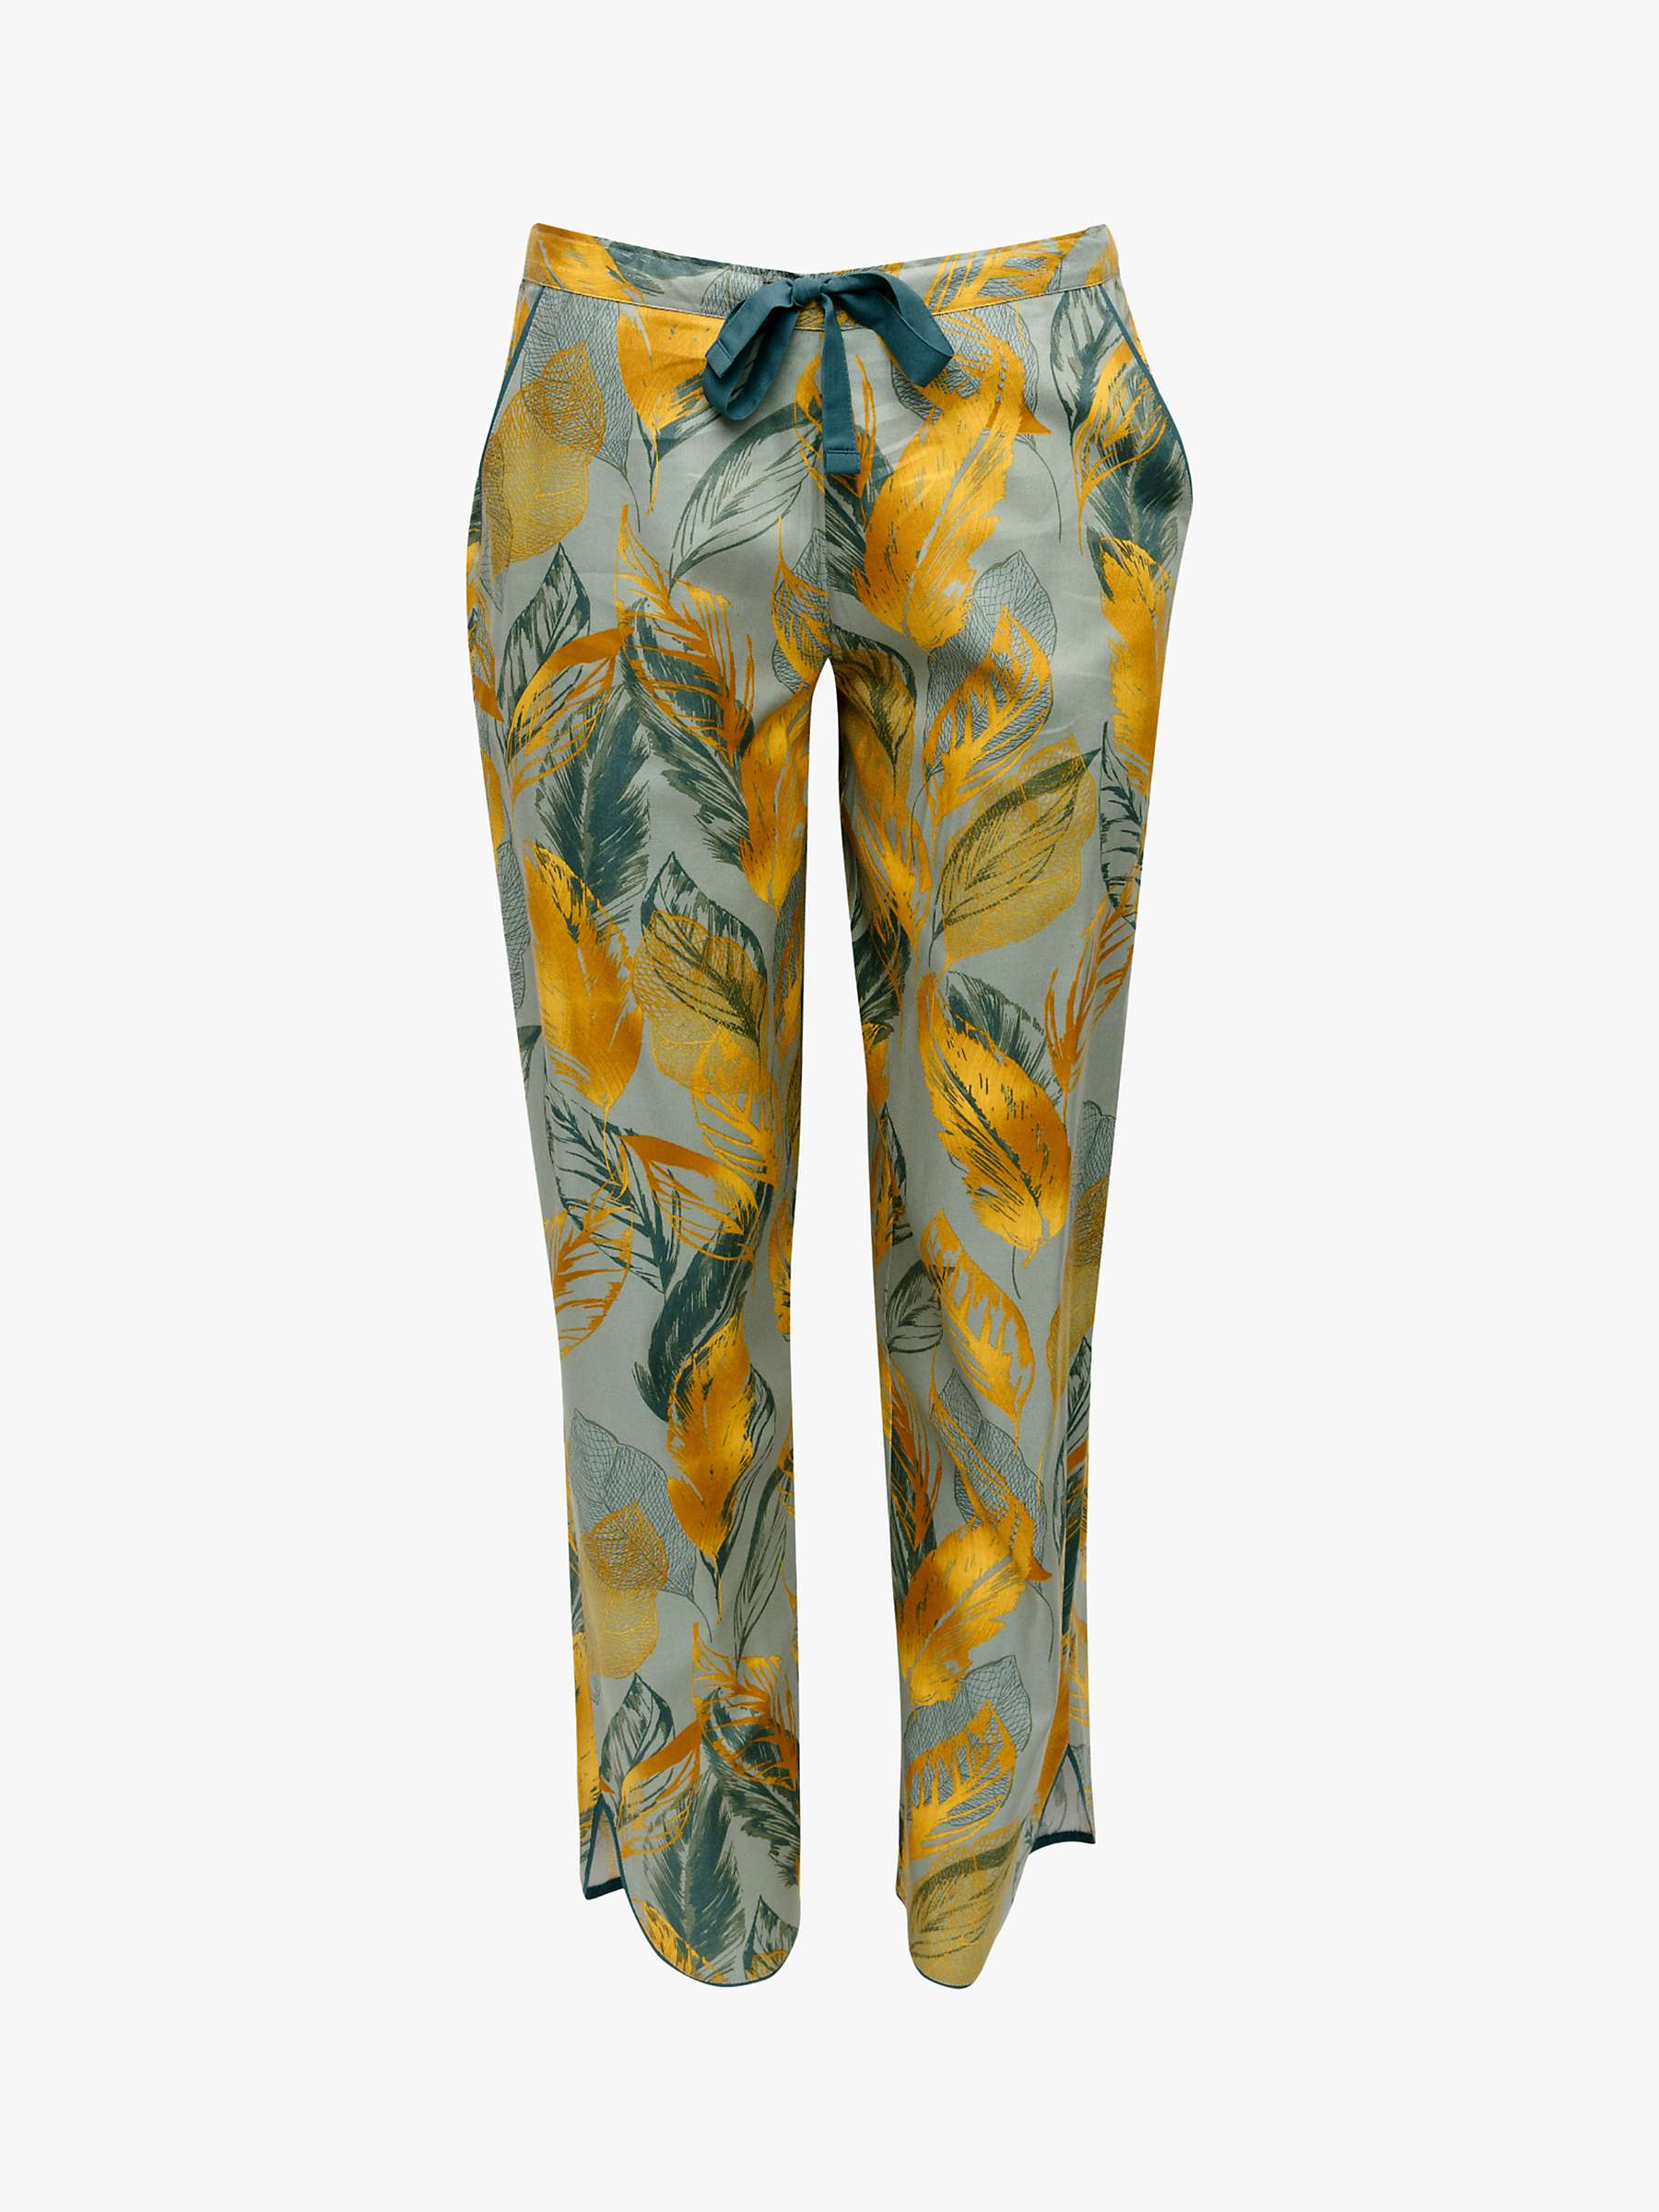 Buy Cyberjammies Hannah Leaf Pyjama Bottoms, Green Online at johnlewis.com